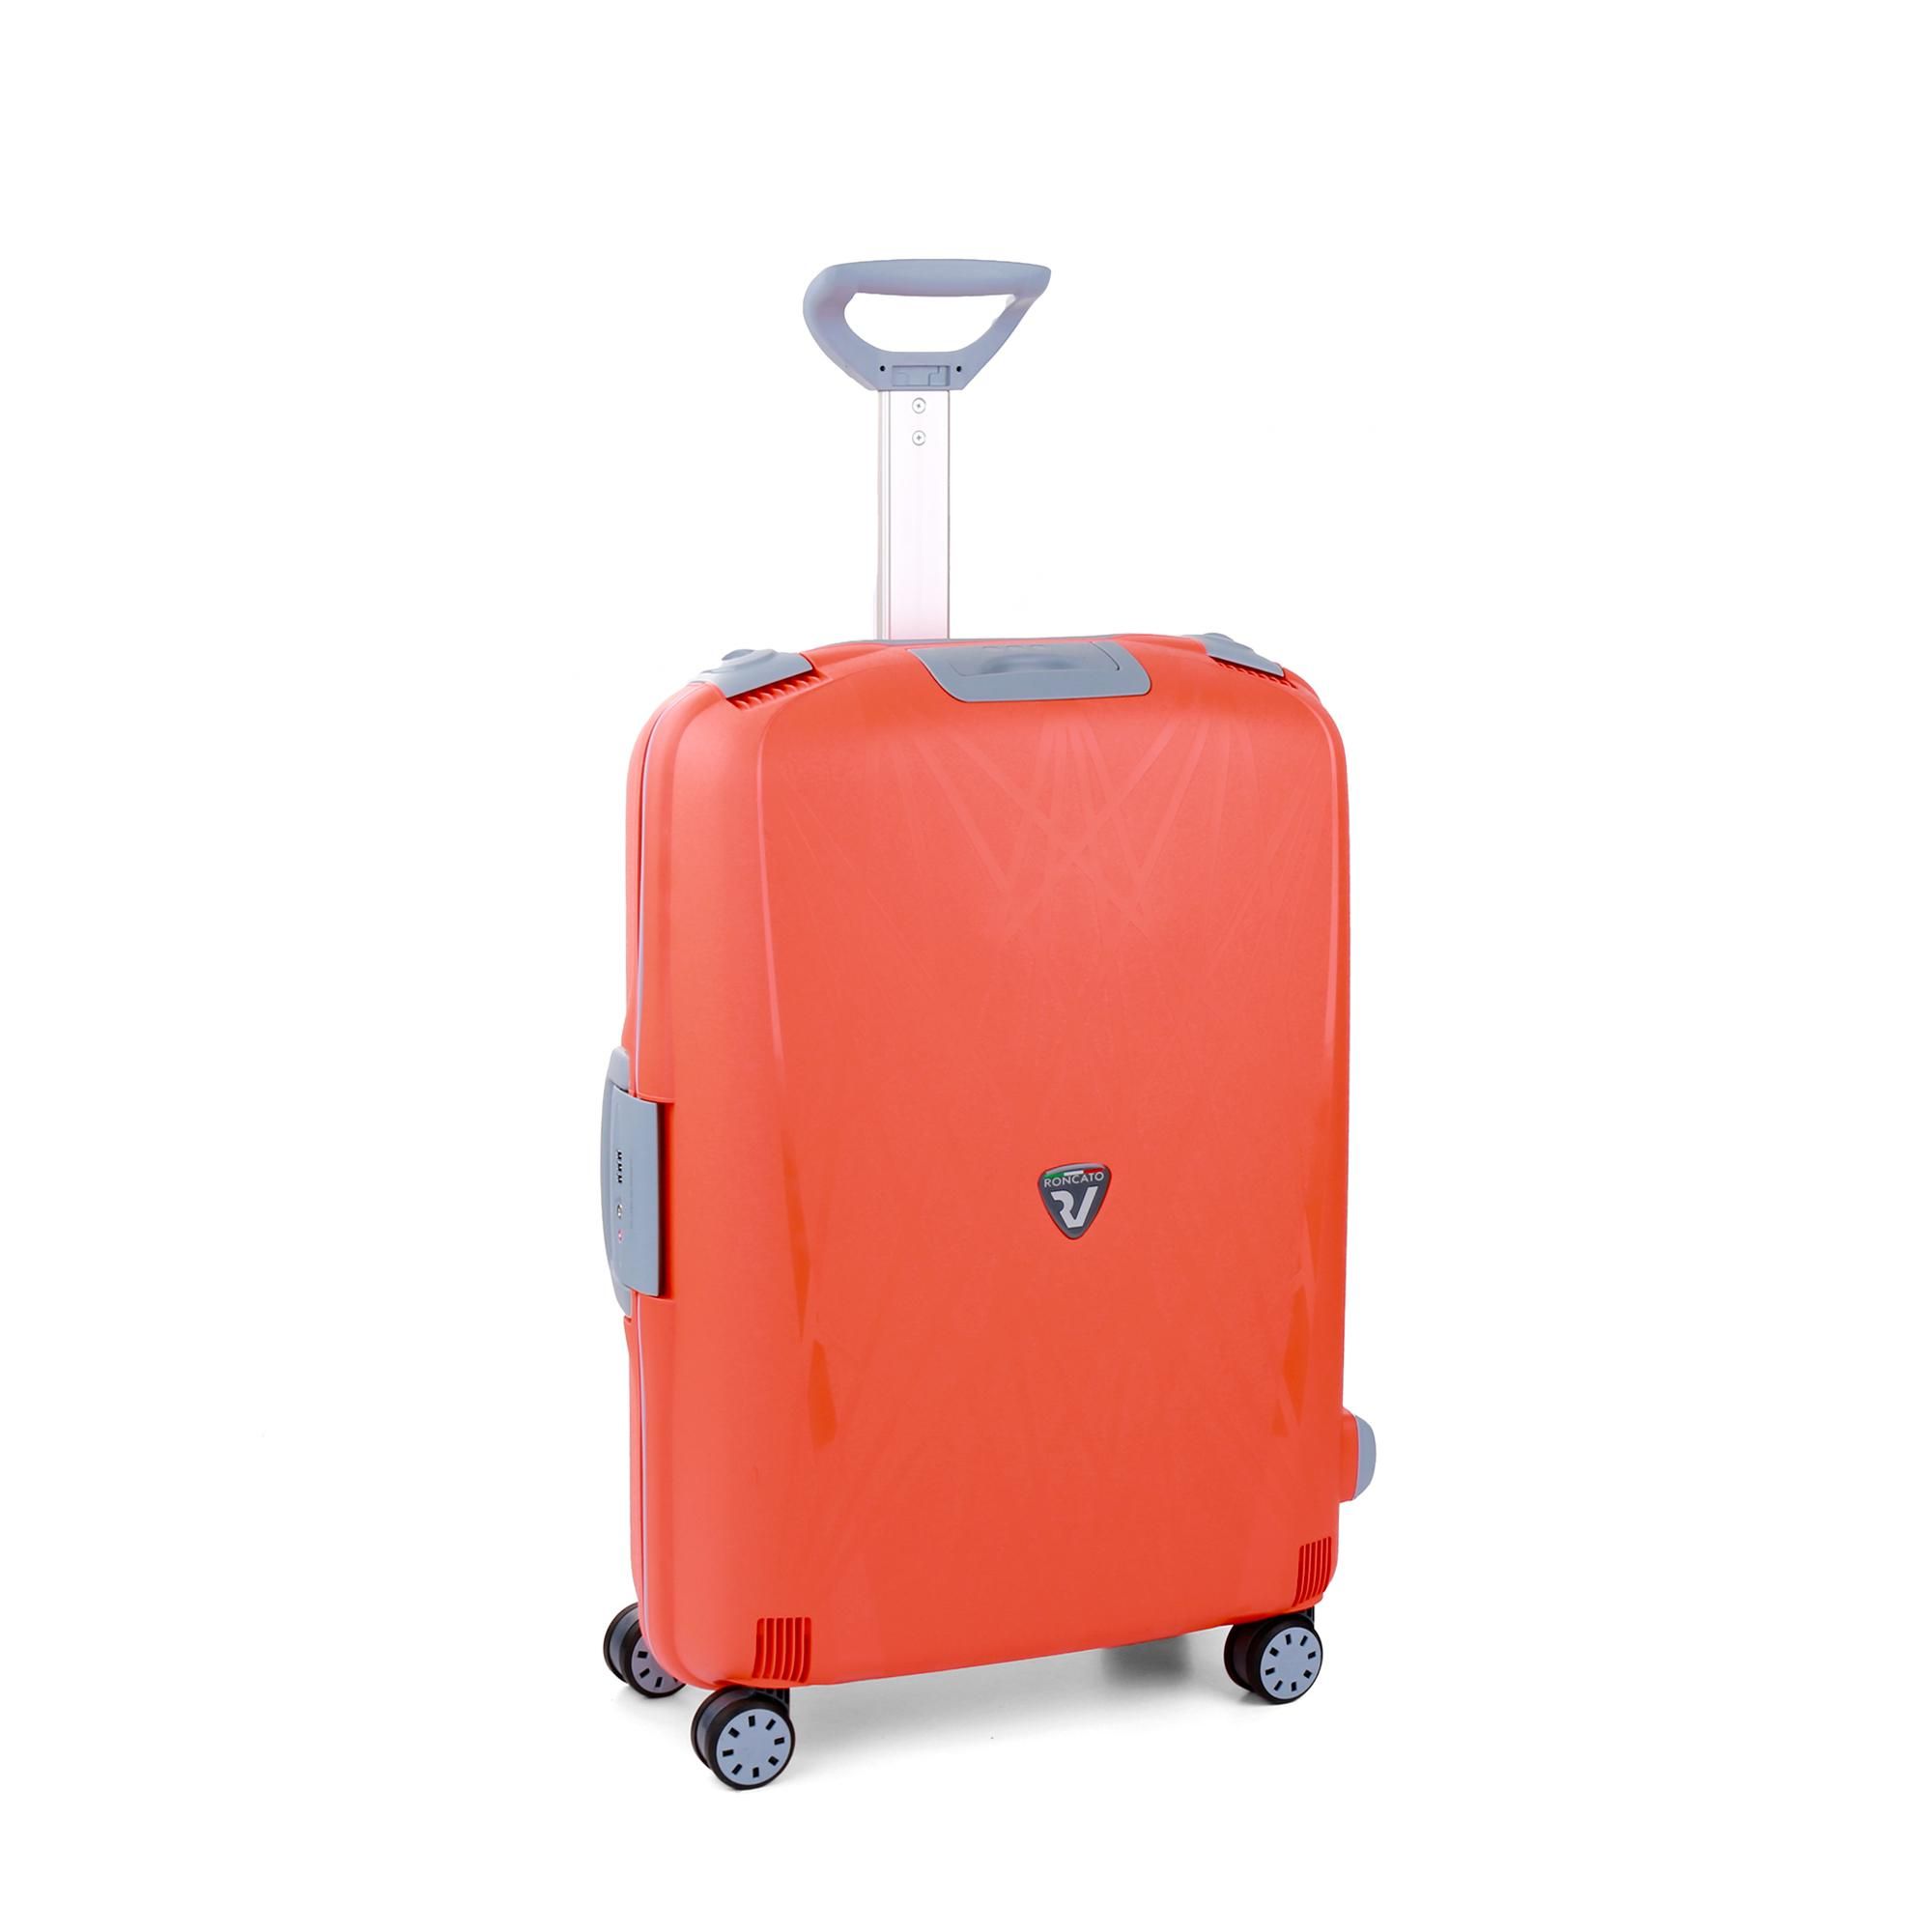 Середня валіза Roncato Light 500712/52